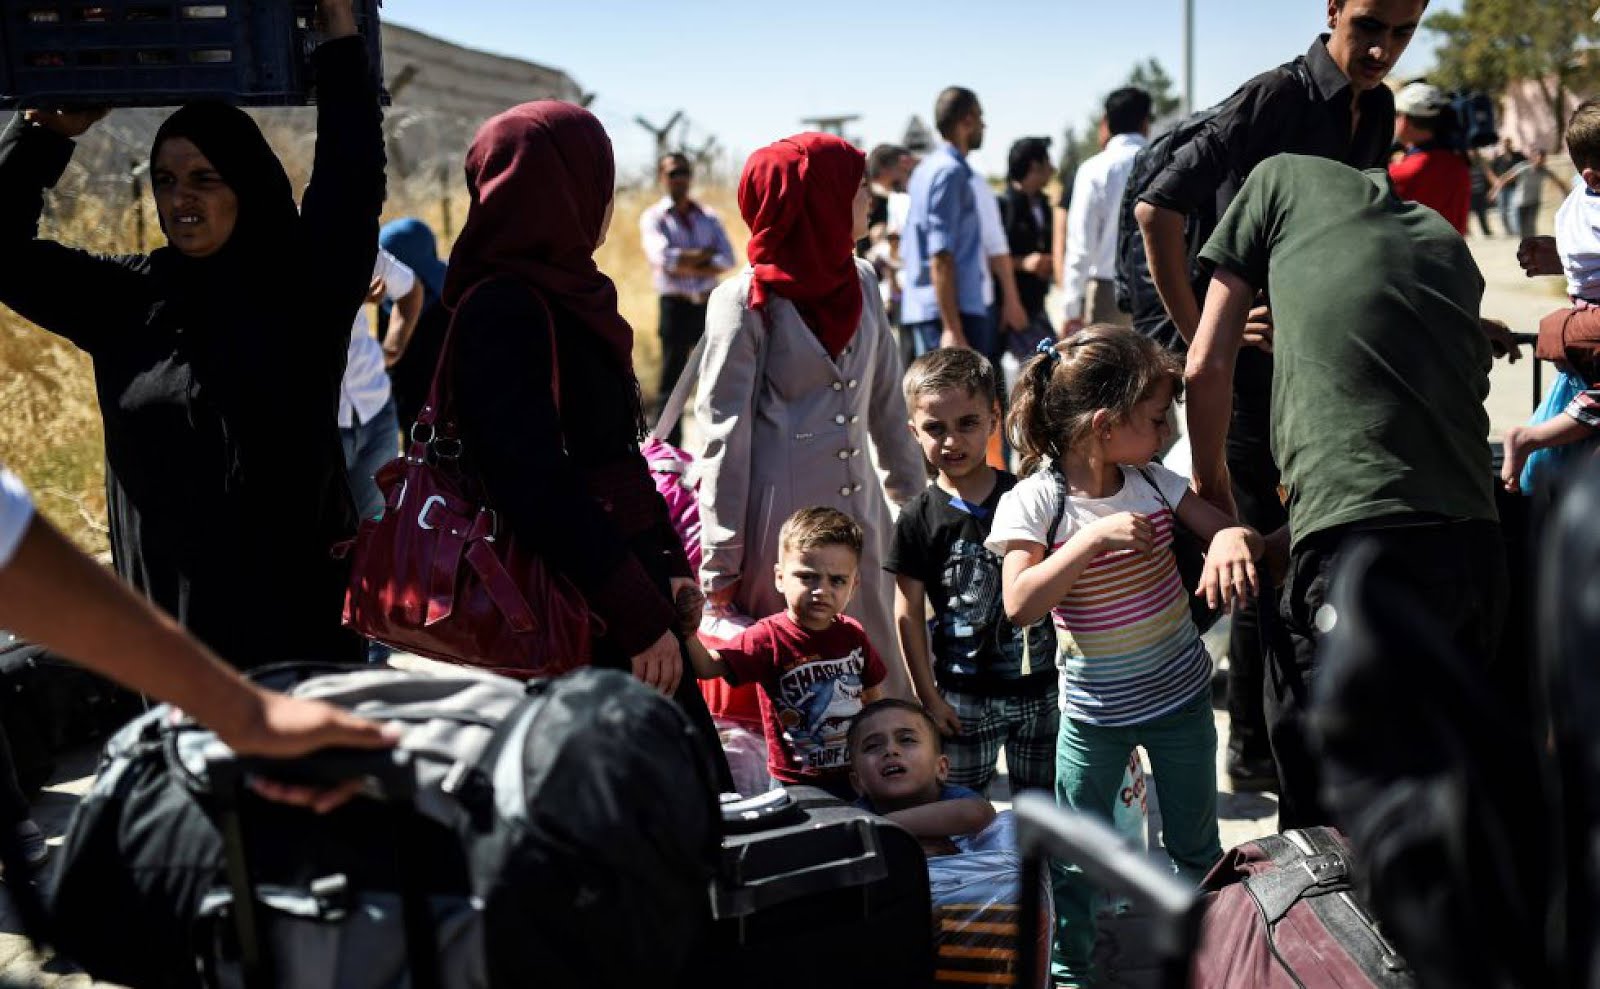 Los refugiados sirios entran en la campaña de las elecciones turcas